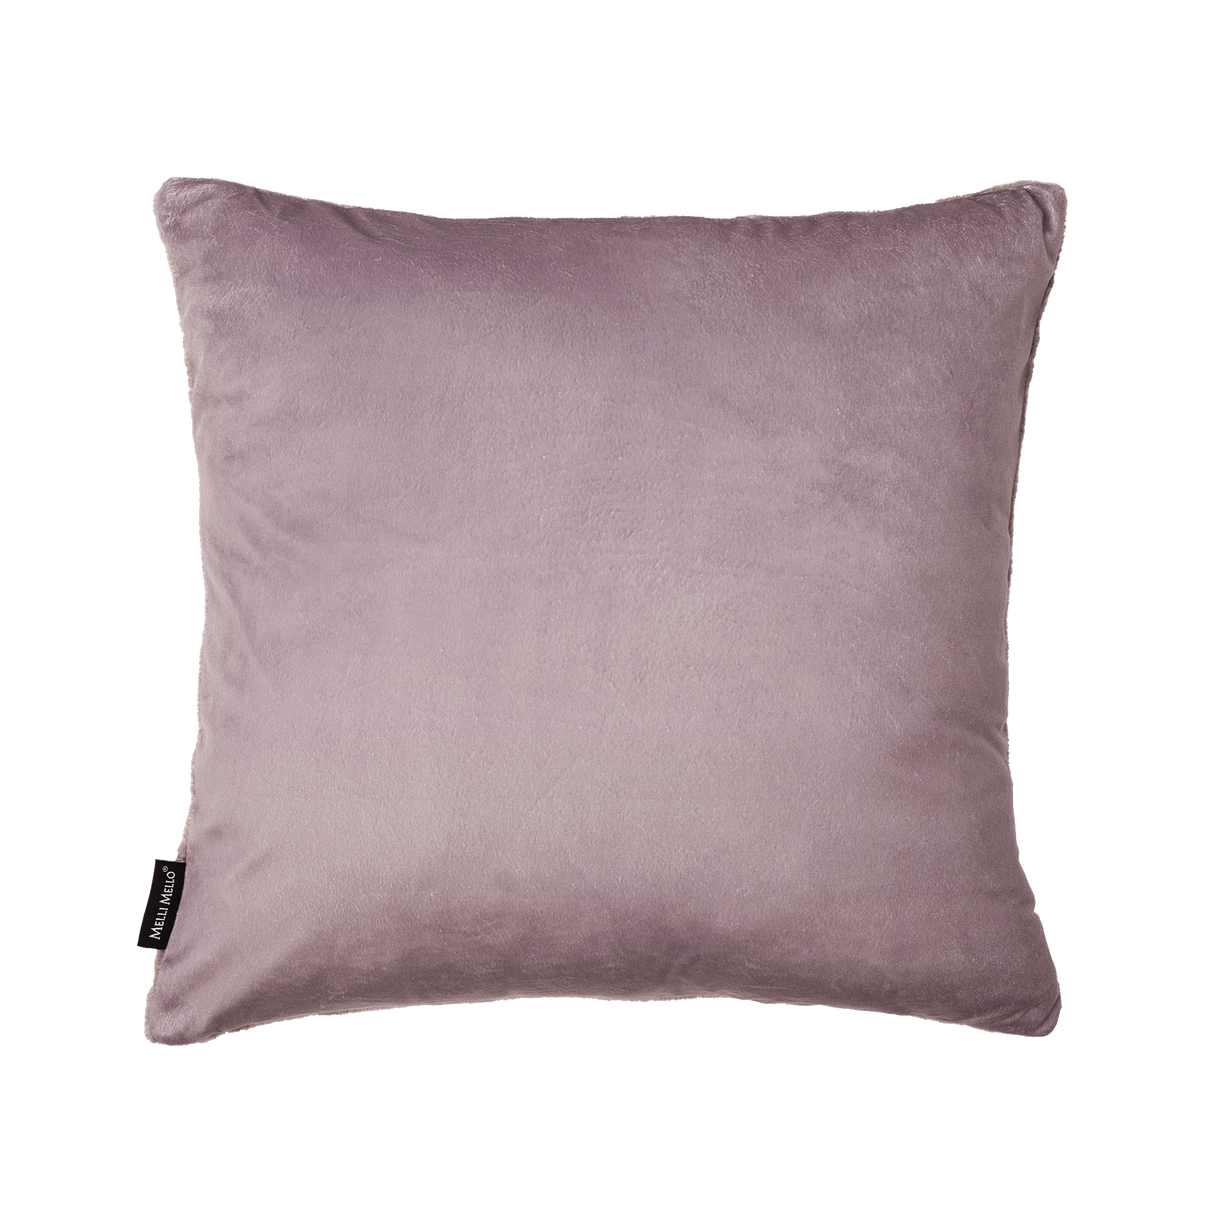 Melli Mello A kind of magic deco cushion Greyish Lilac Mauve